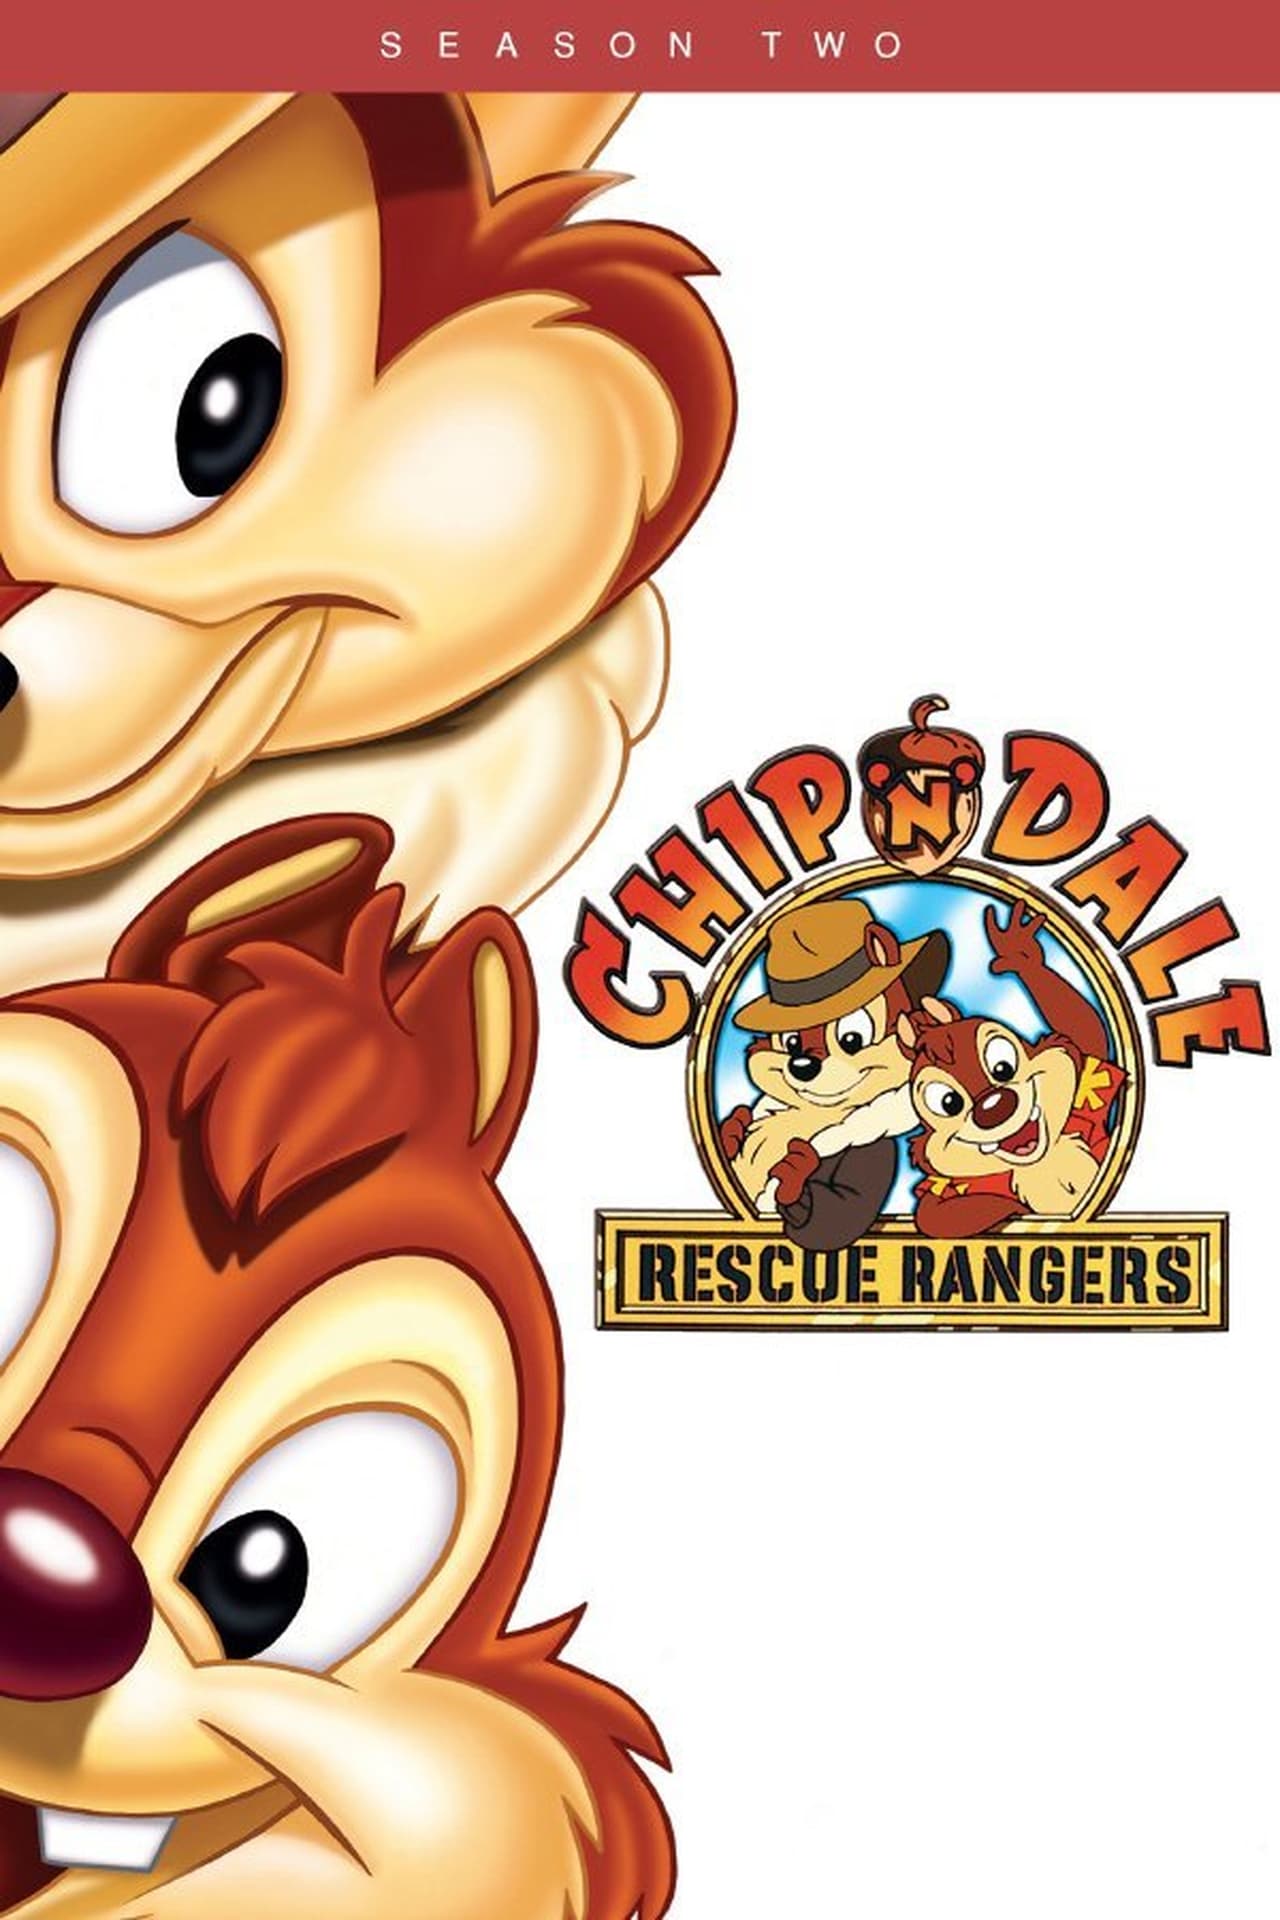 Chip 'n Dale Rescue Rangers Season 2